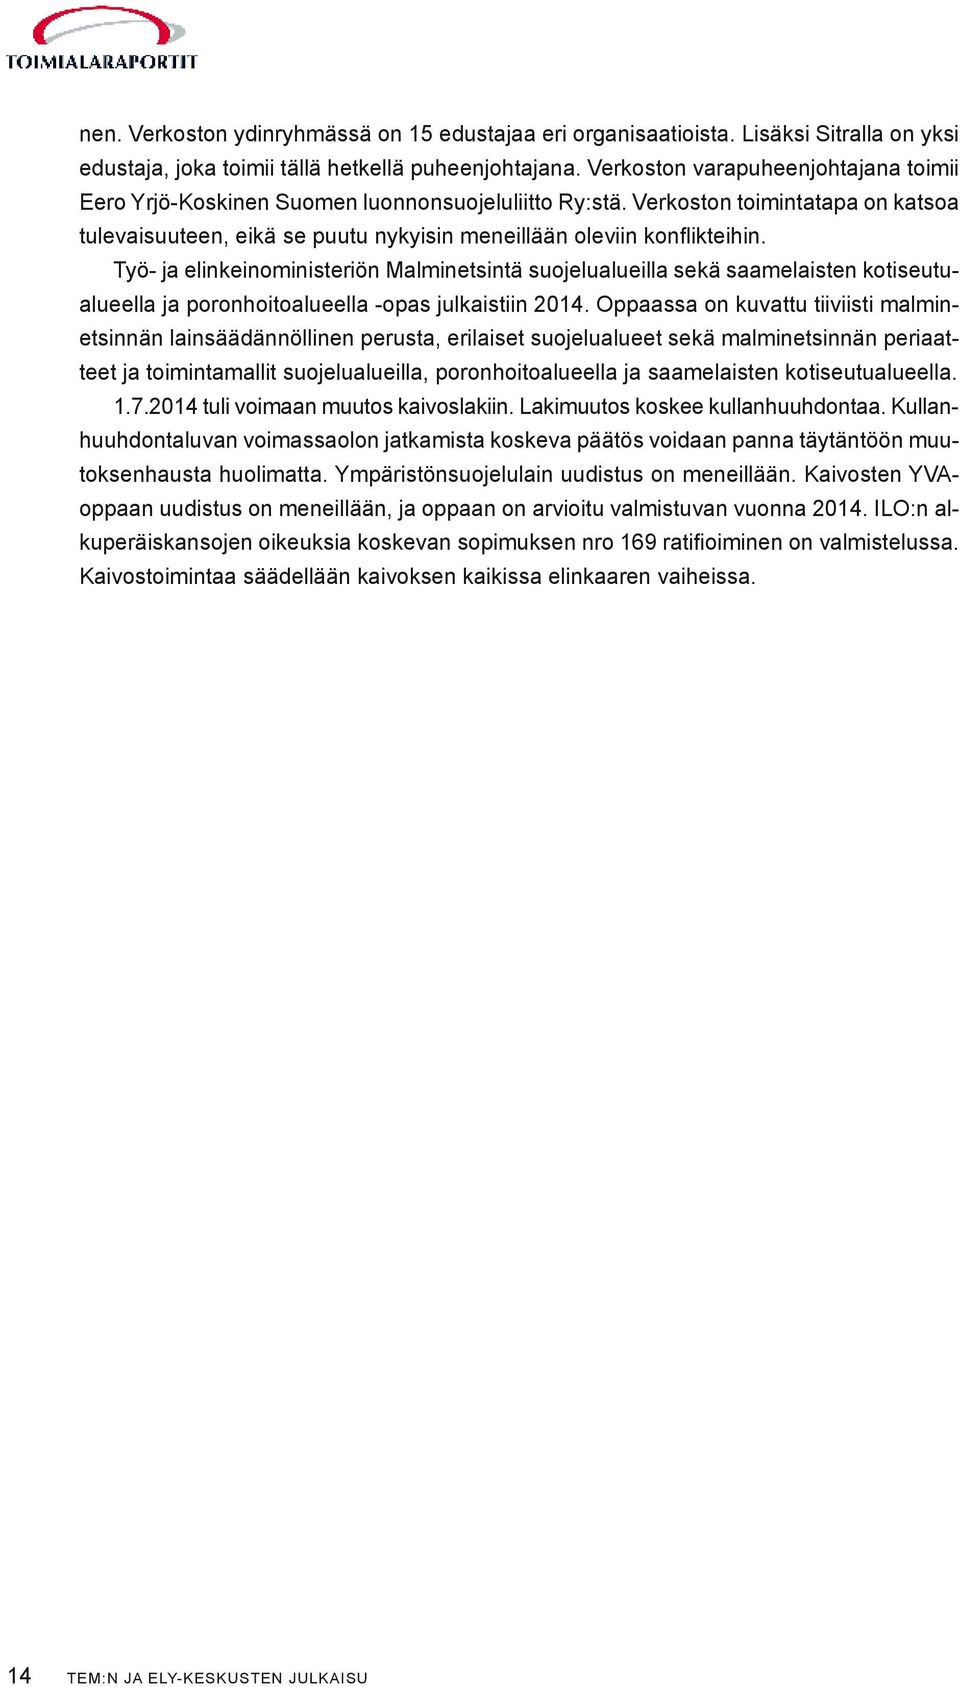 Työ- ja elinkeinoministeriön Malminetsintä suojelualueilla sekä saamelaisten kotiseutualueella ja poronhoitoalueella -opas julkaistiin 2014.